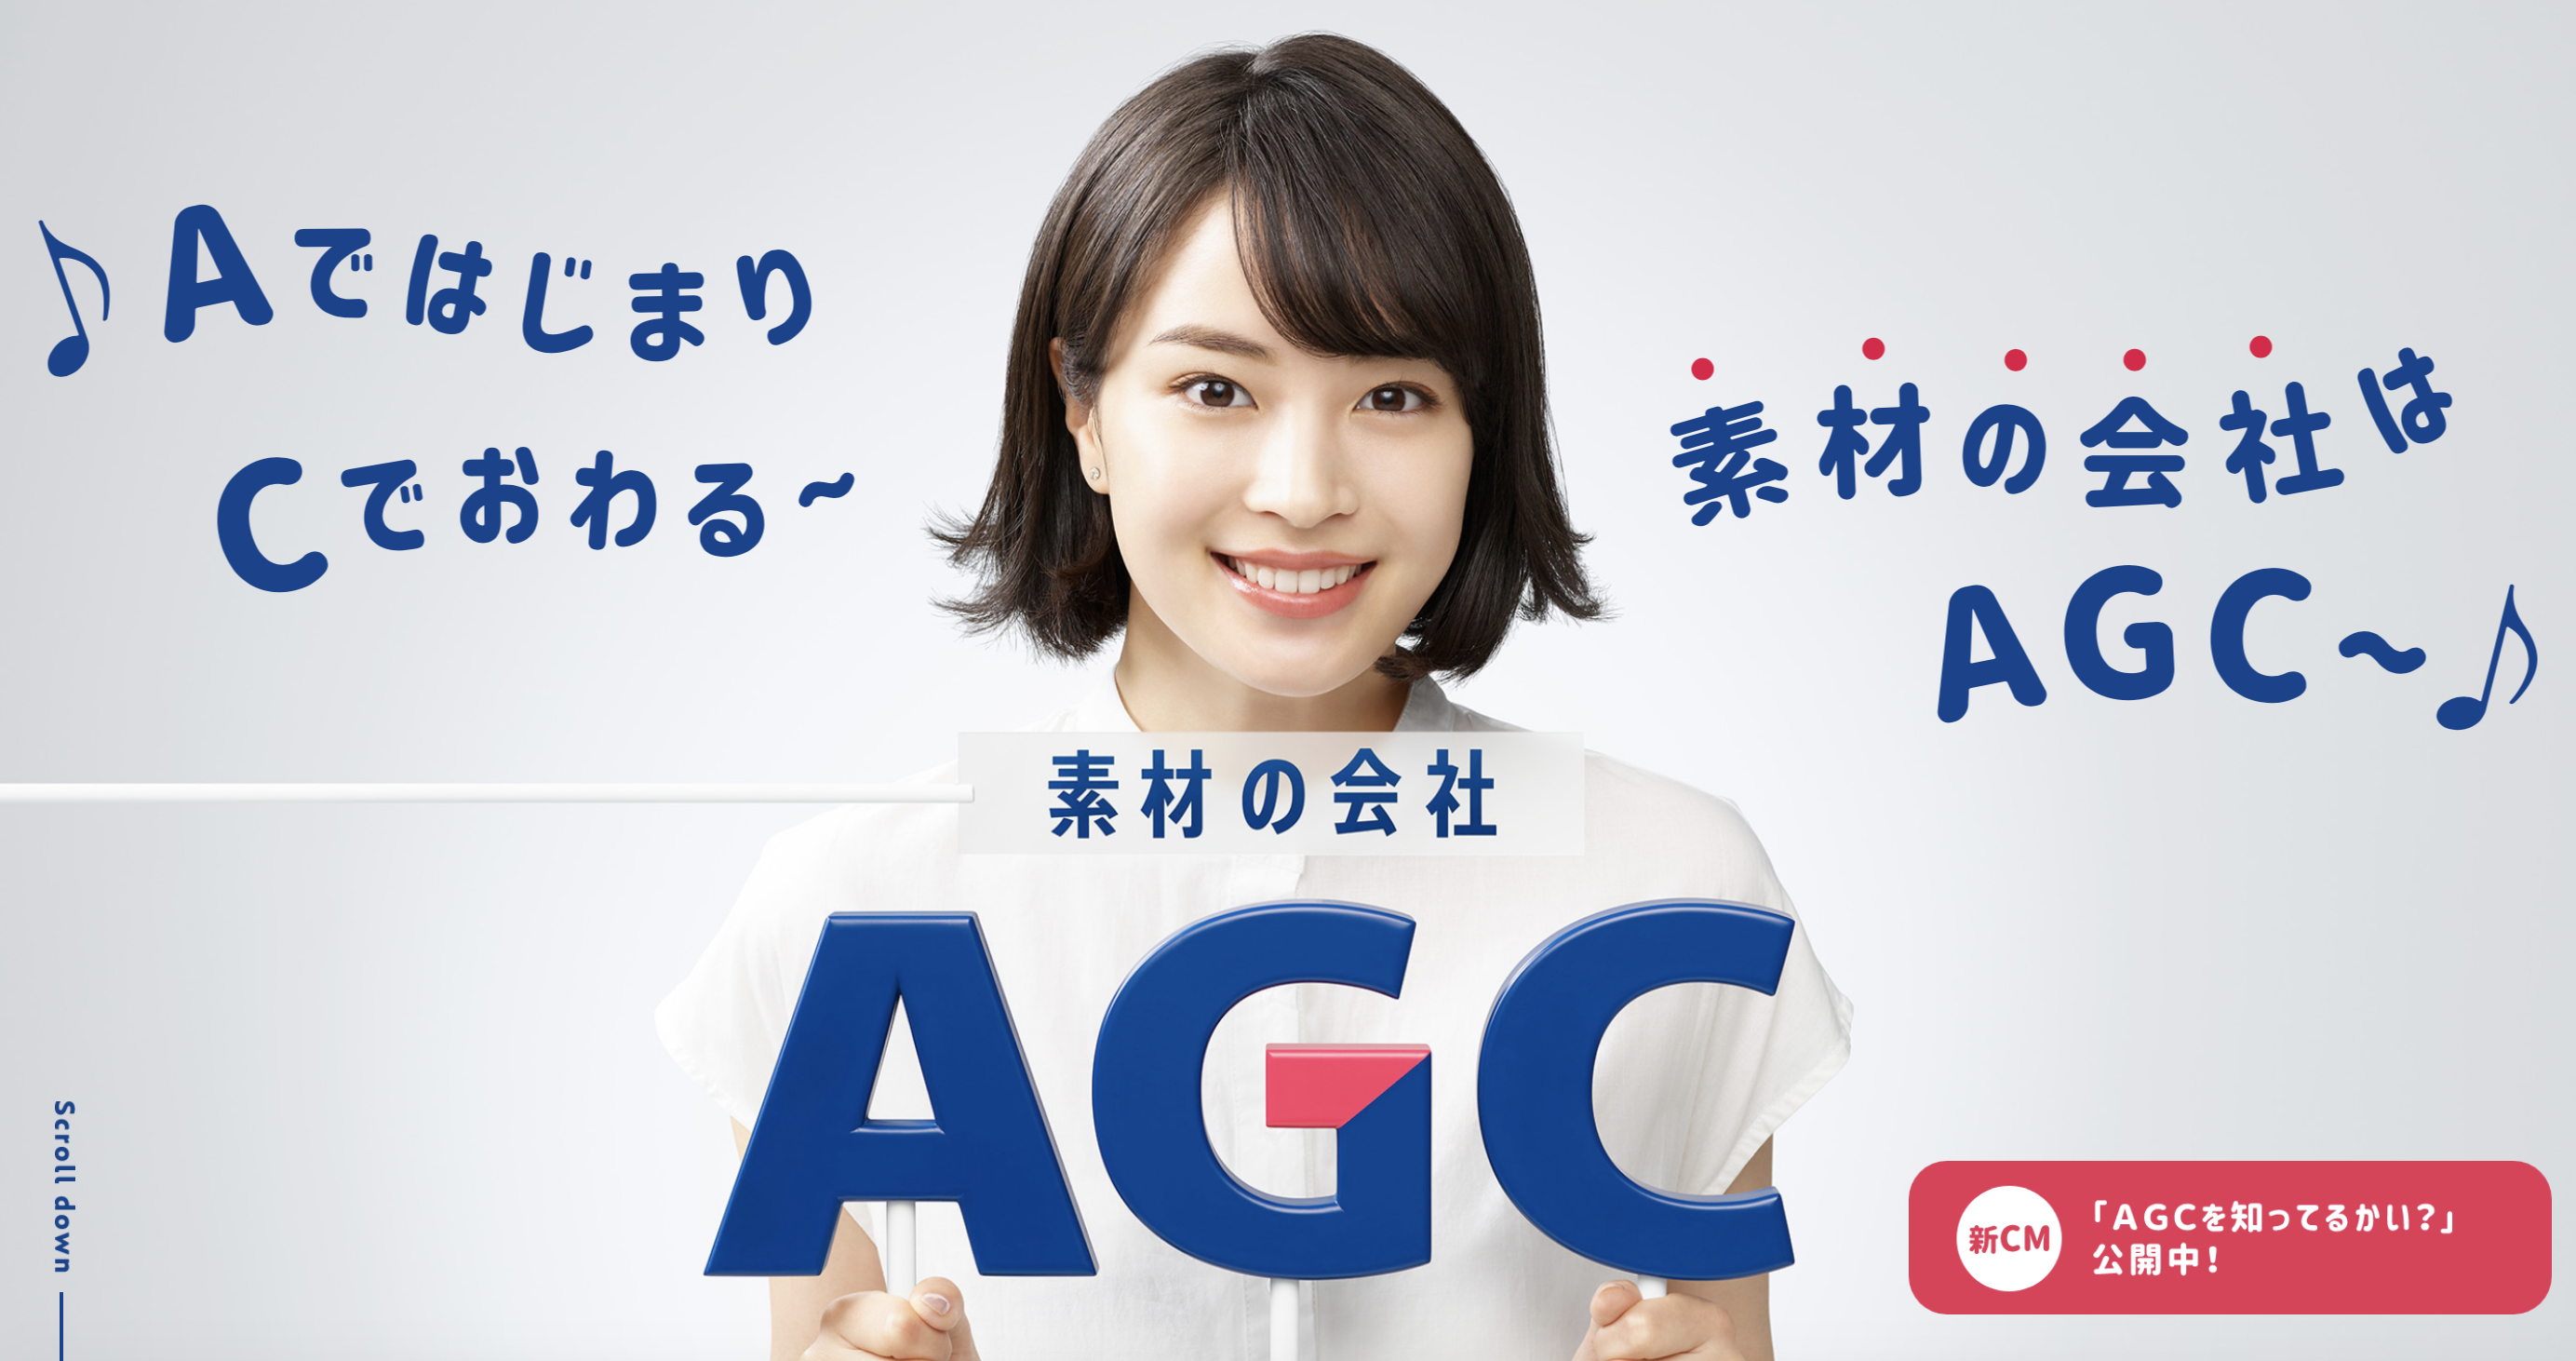 AGC株式会社(旭硝子) 2020年12月期 通期決算 説明会資料